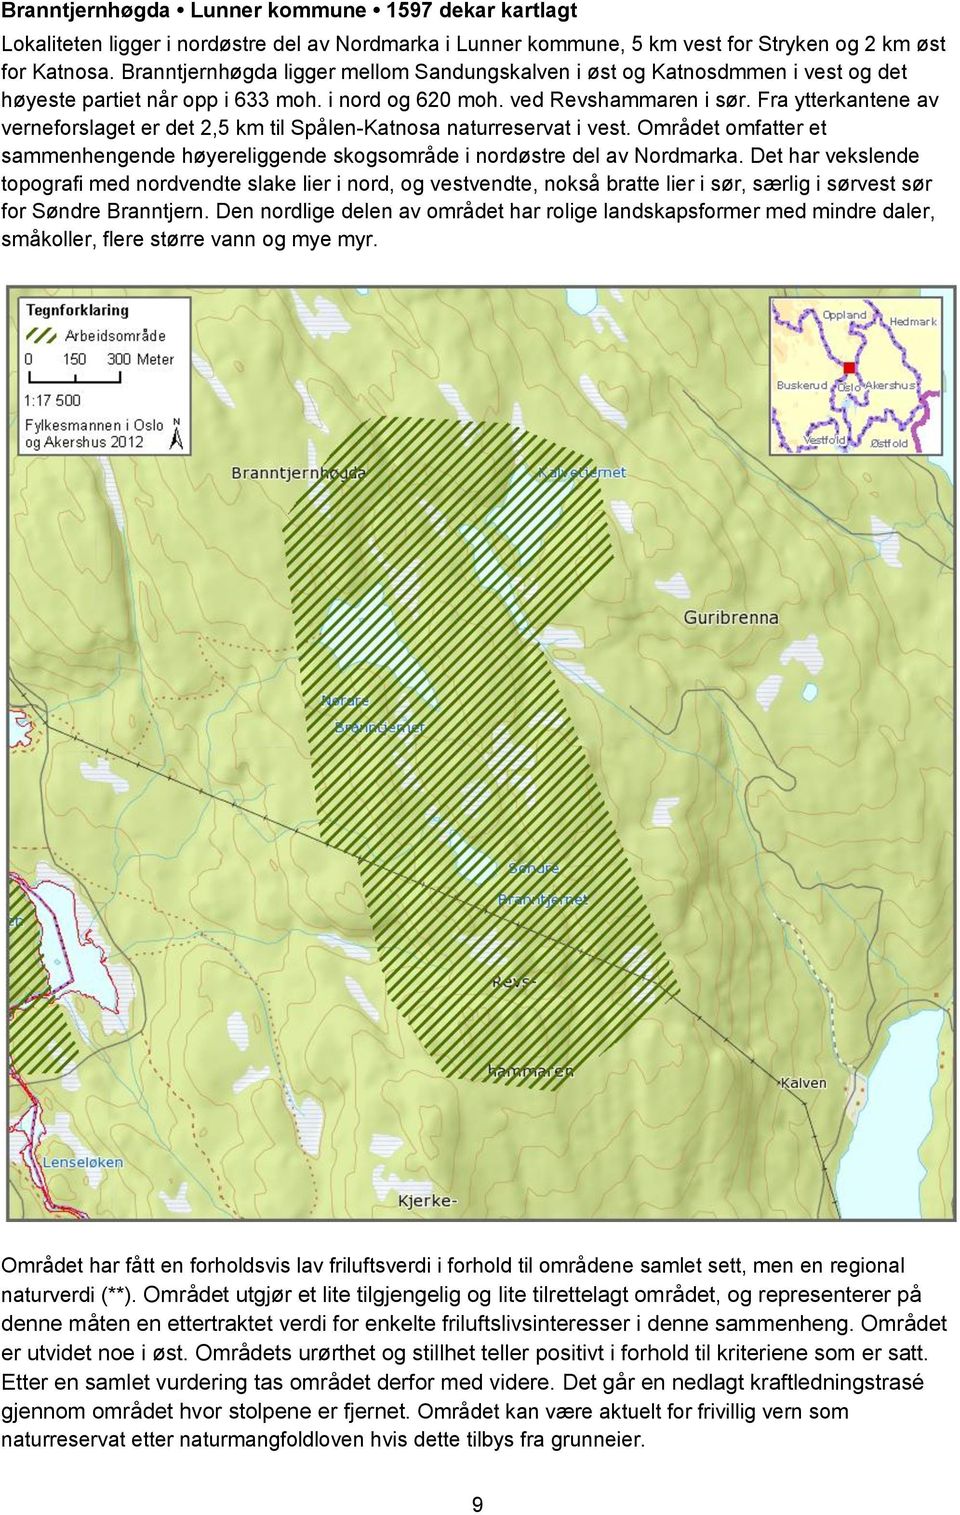 Fra ytterkantene av verneforslaget er det 2,5 km til Spålen-Katnosa naturreservat i vest. Området omfatter et sammenhengende høyereliggende skogsområde i nordøstre del av Nordmarka.